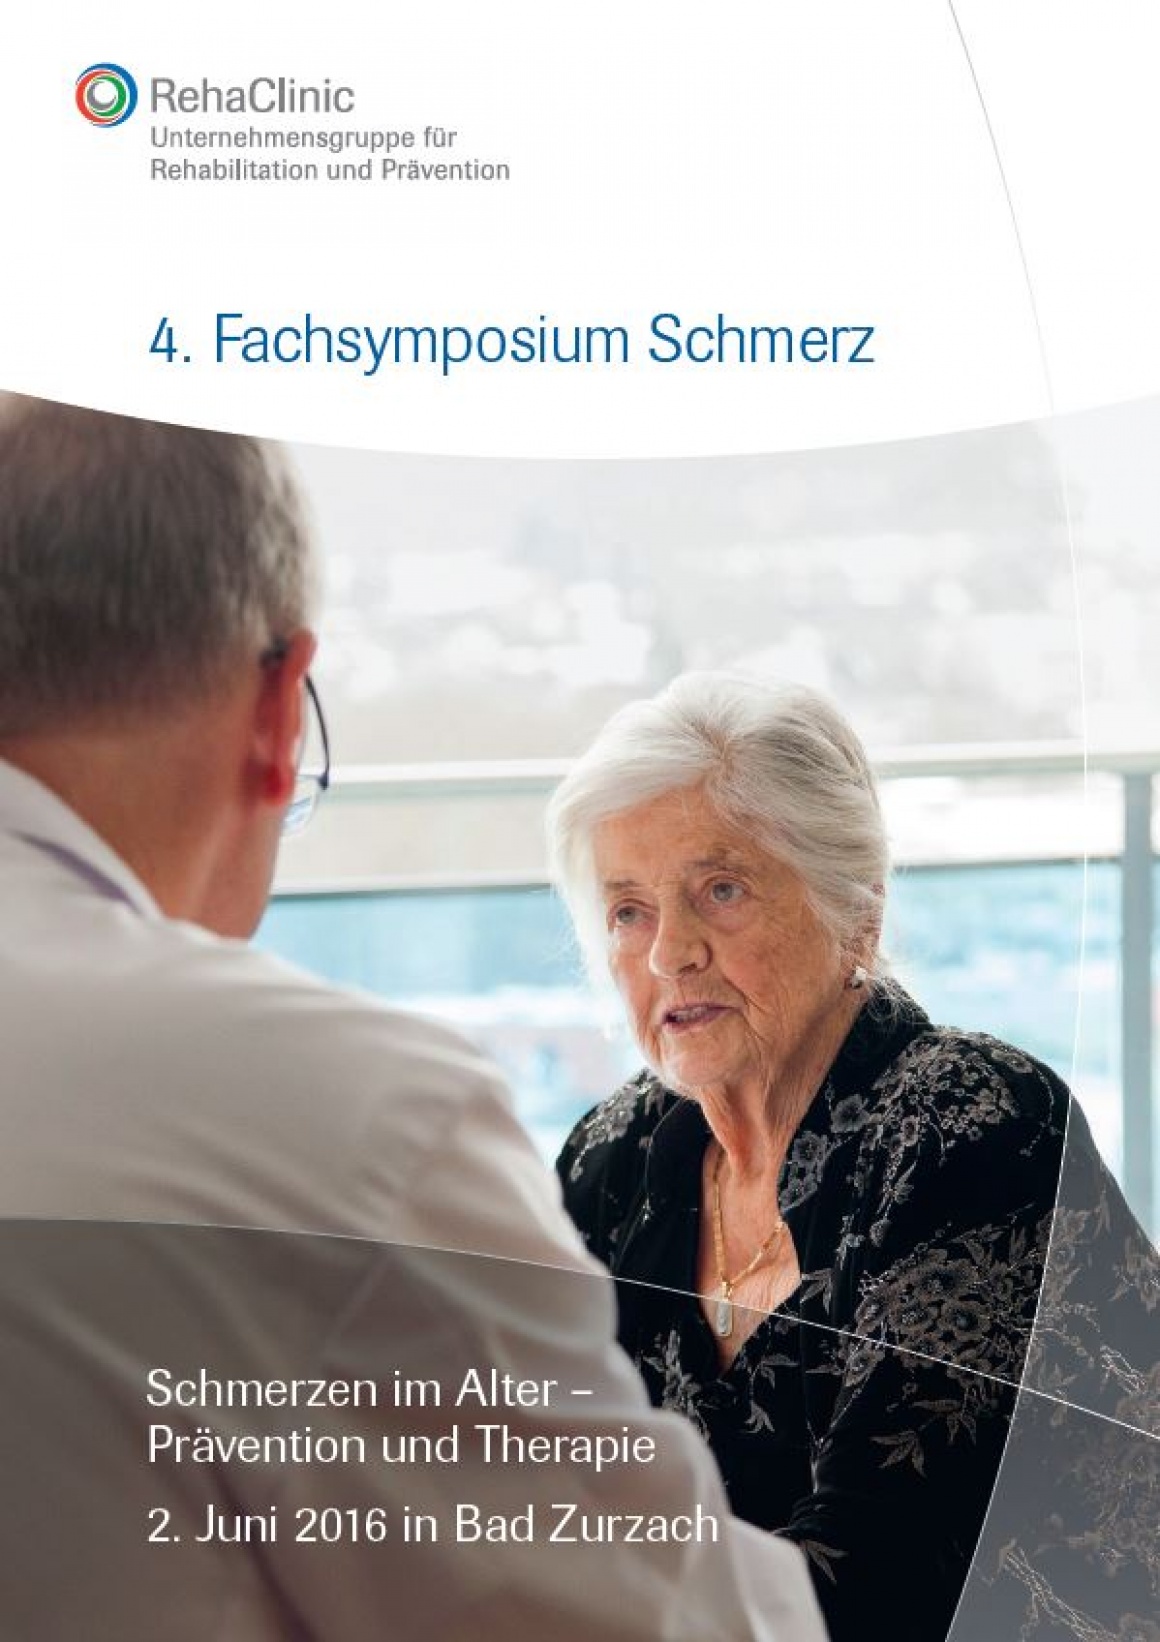 4. Fachsymposium Schmerz, 02.06.2016